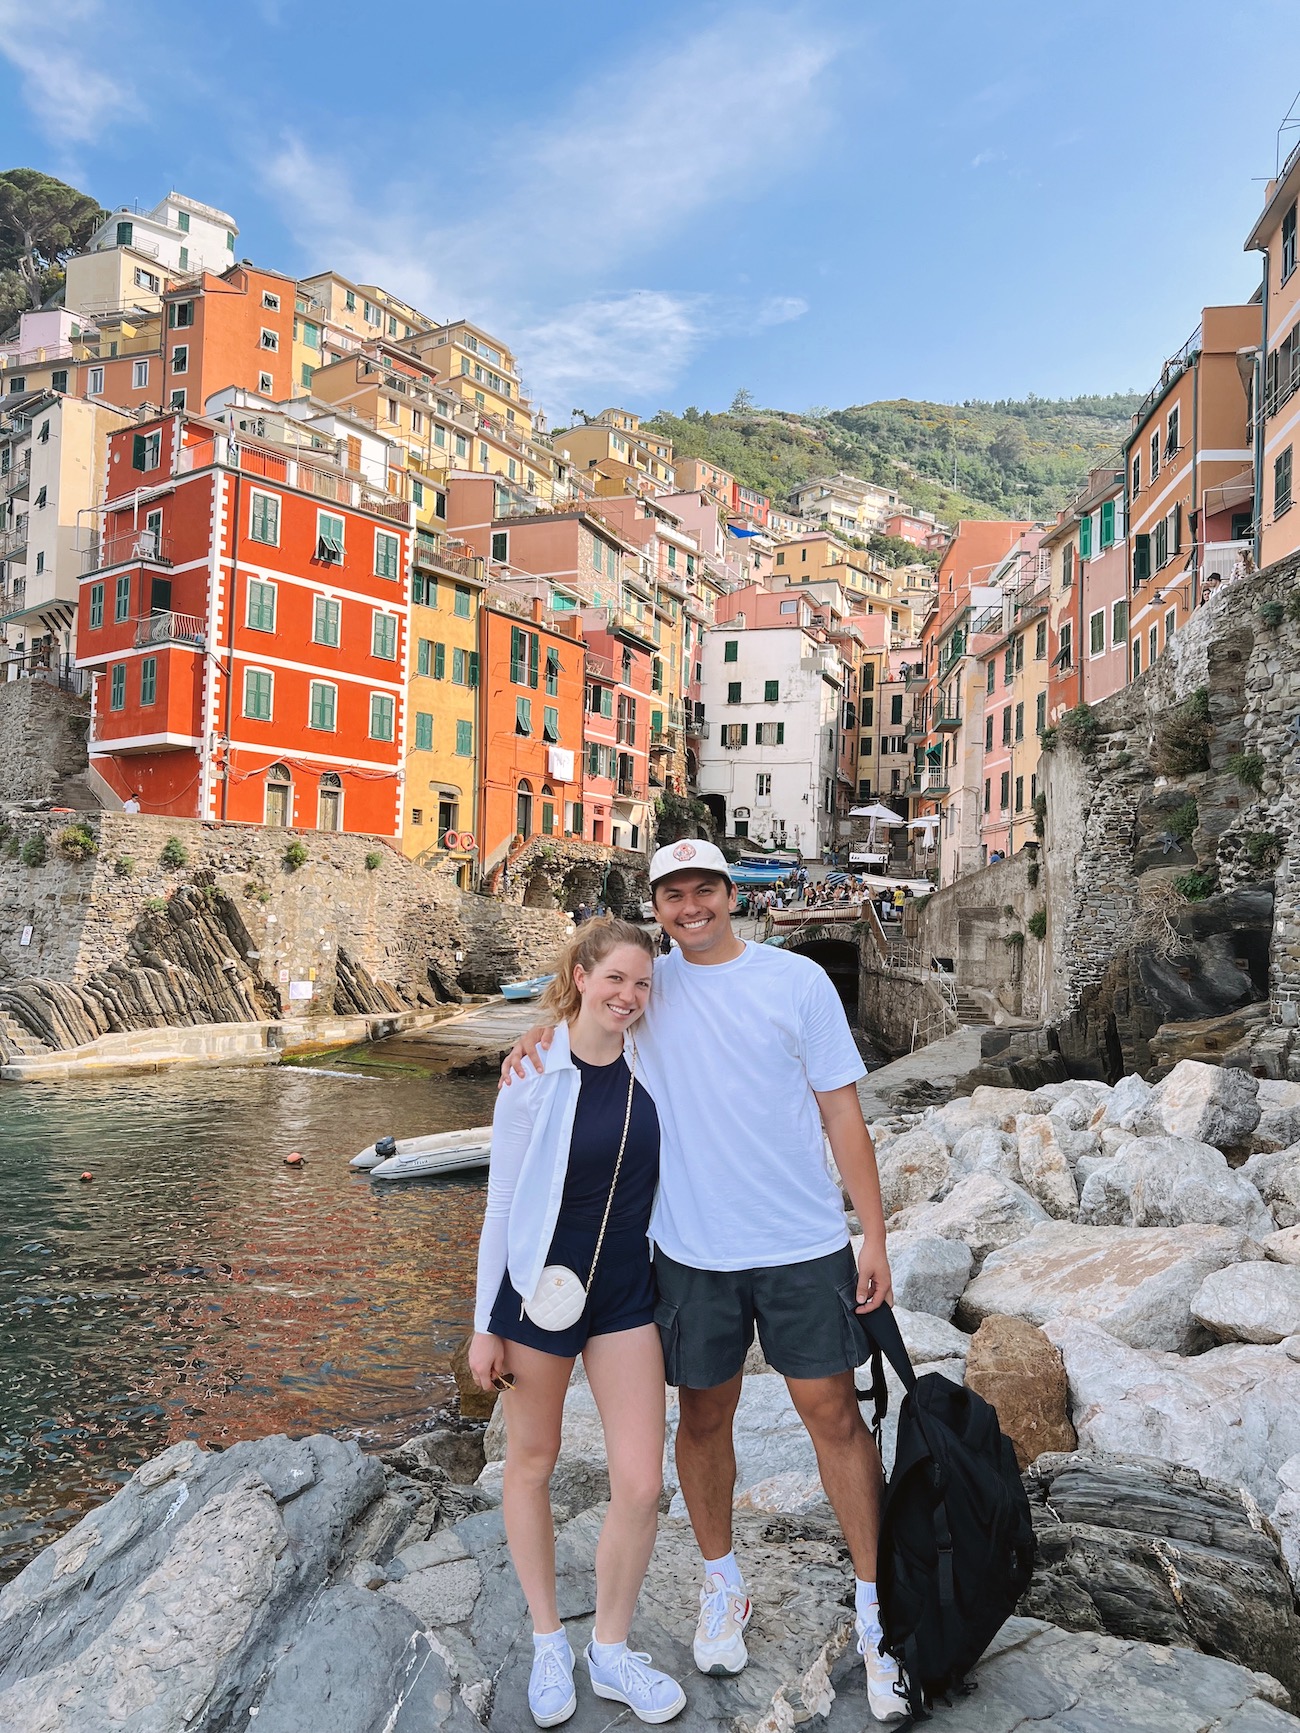 Fran Acciardo Italy Recap #2: Cinque Terre (Part 1)